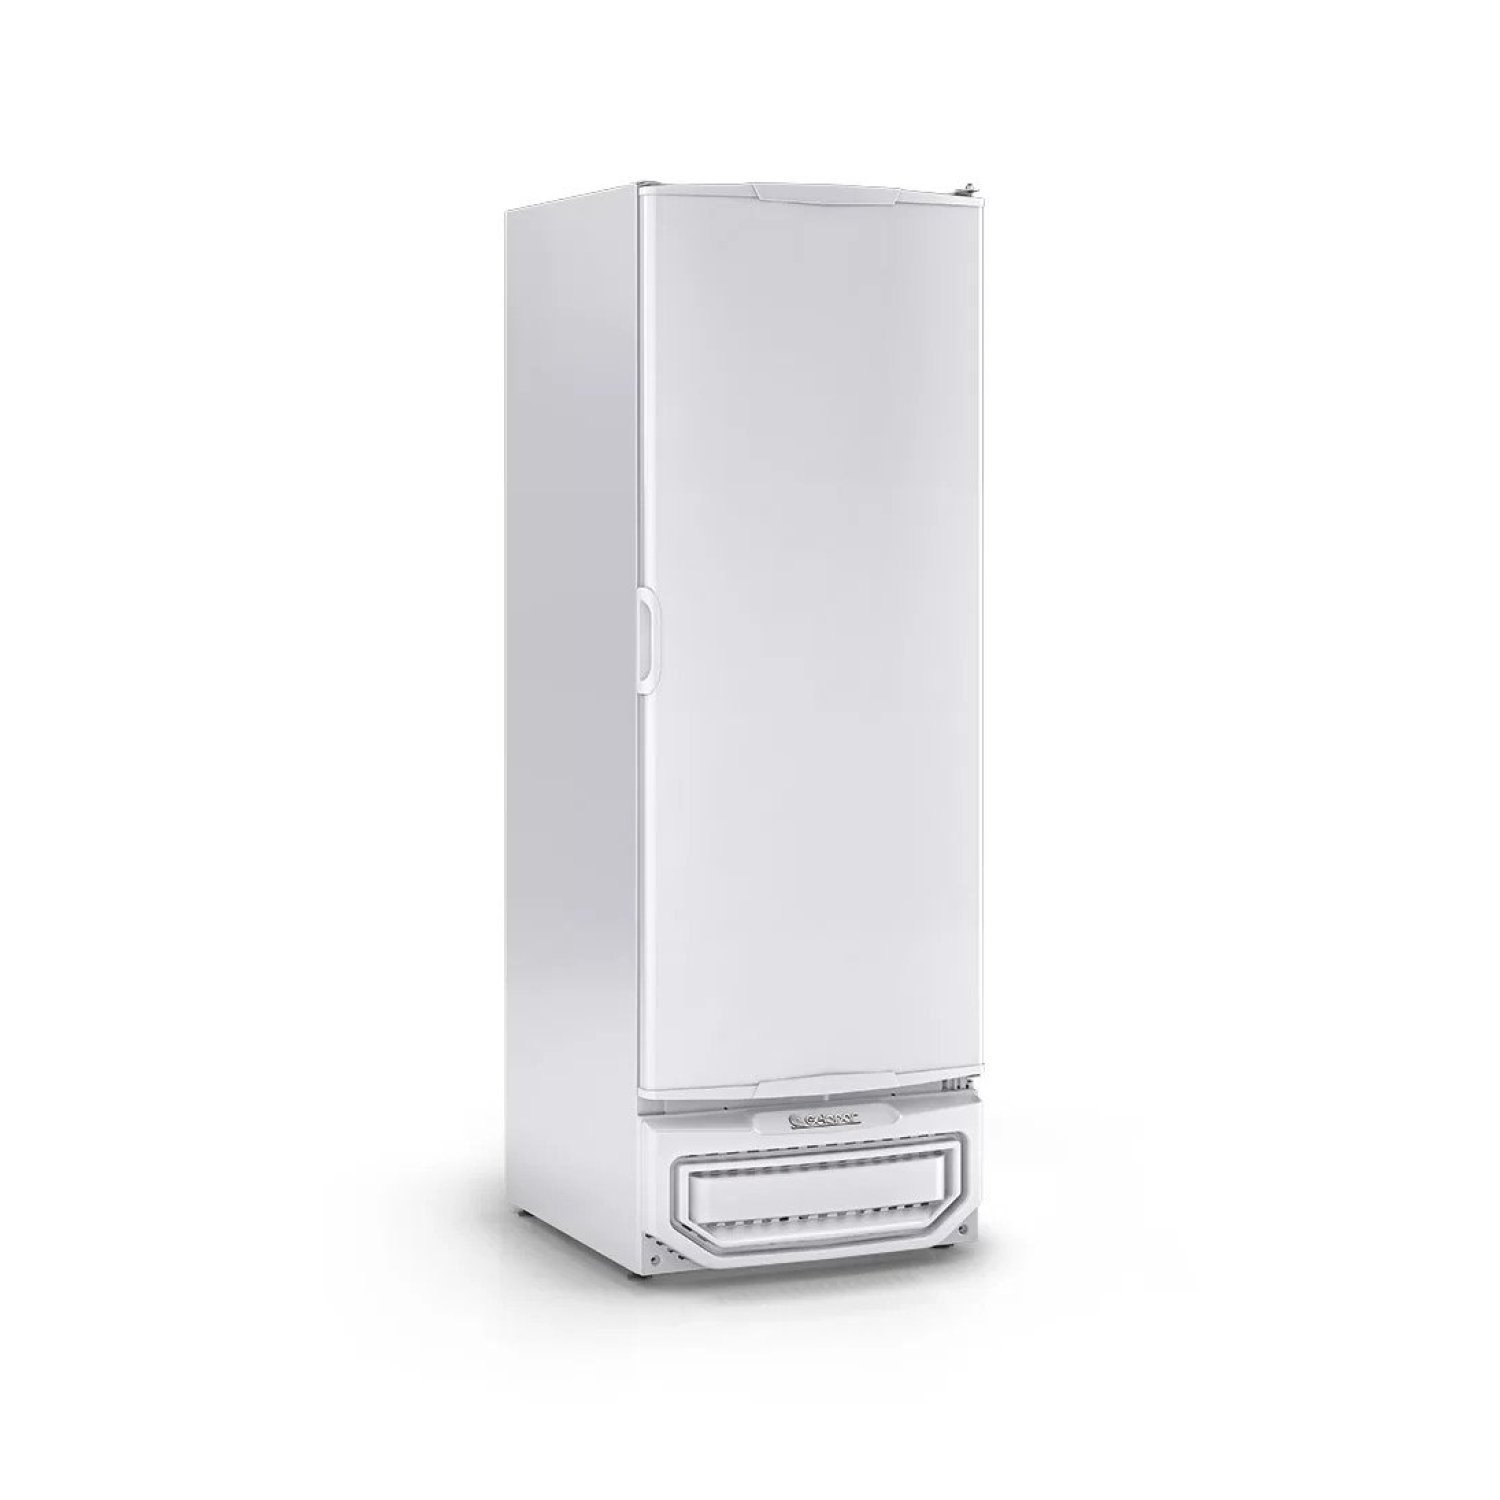 Freezer/Refrigerador Vertical Tripla Ação 577 litros Porta Cega GPC-57 TE BR Gelopar 220V - 2